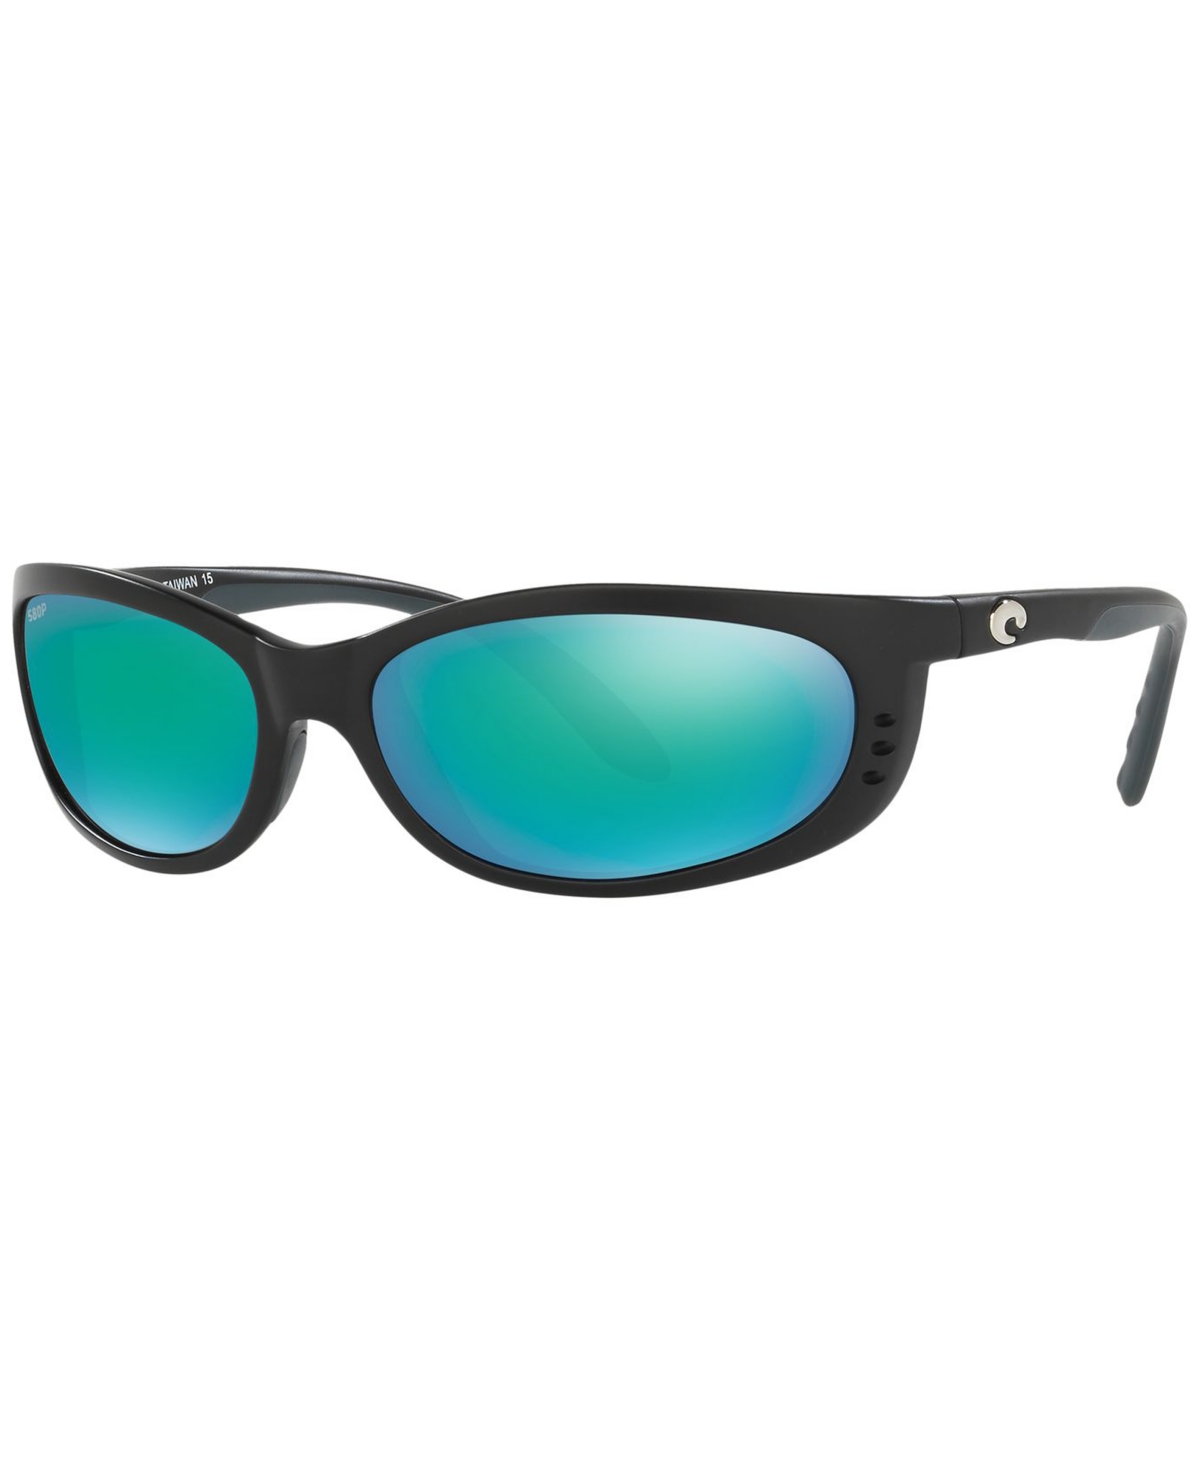 Costa Del Mar Polarized Sunglasses, Fathomp In Black Matte,blue Polar